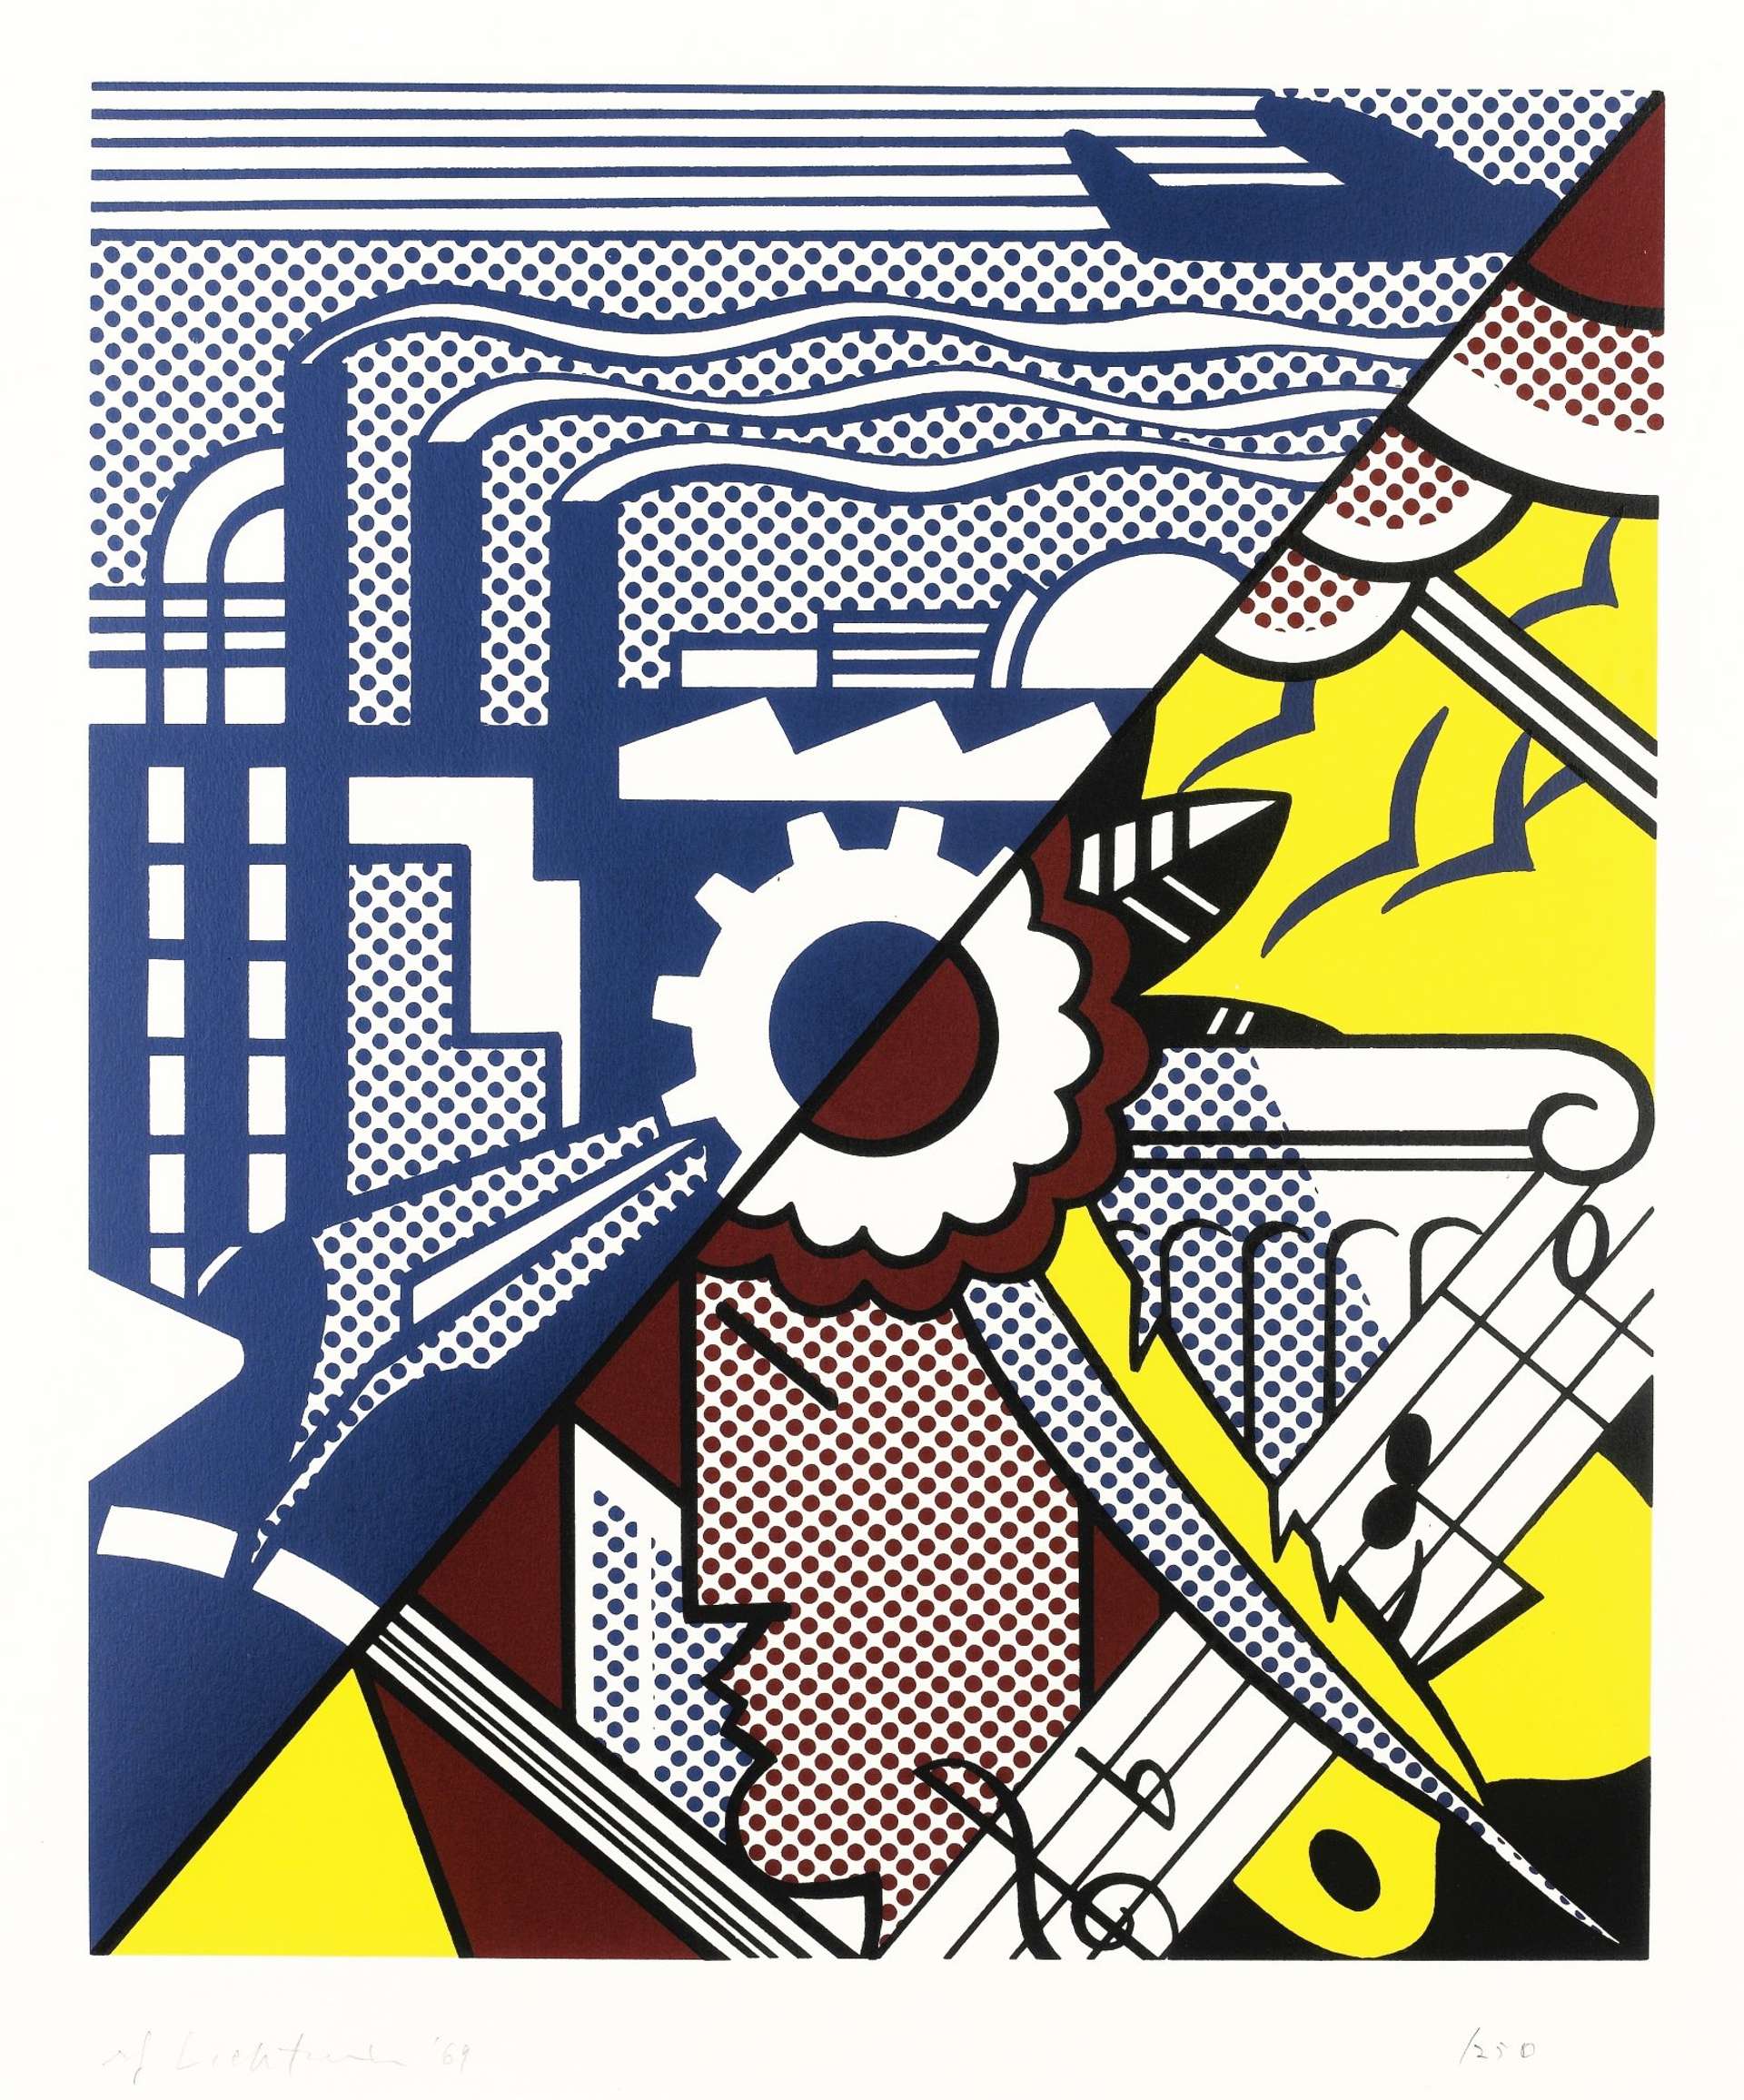 Industry And The Arts by Roy Lichtenstein - MyArtBroker